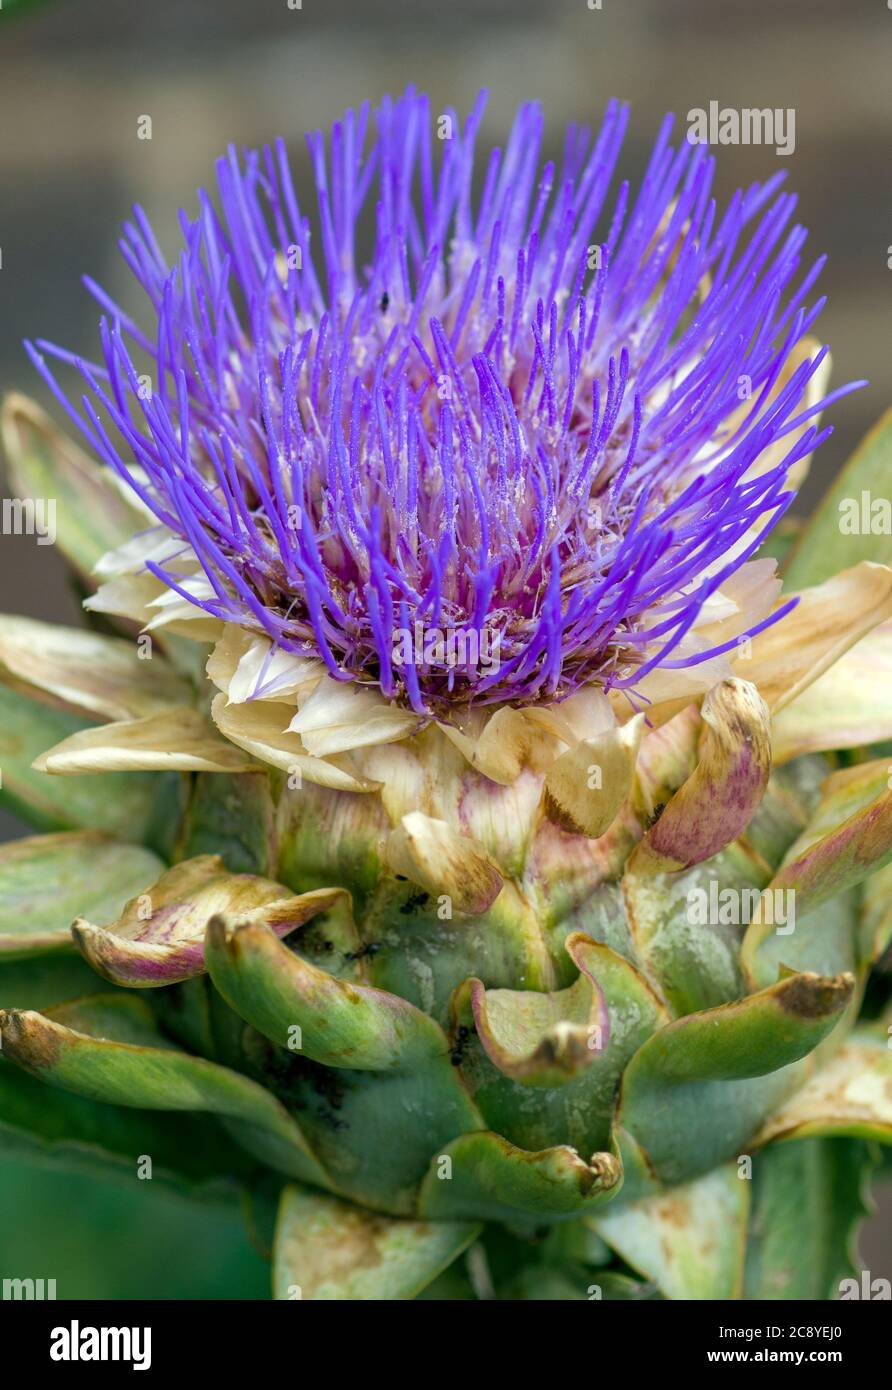 artichoke flower Stock Photo